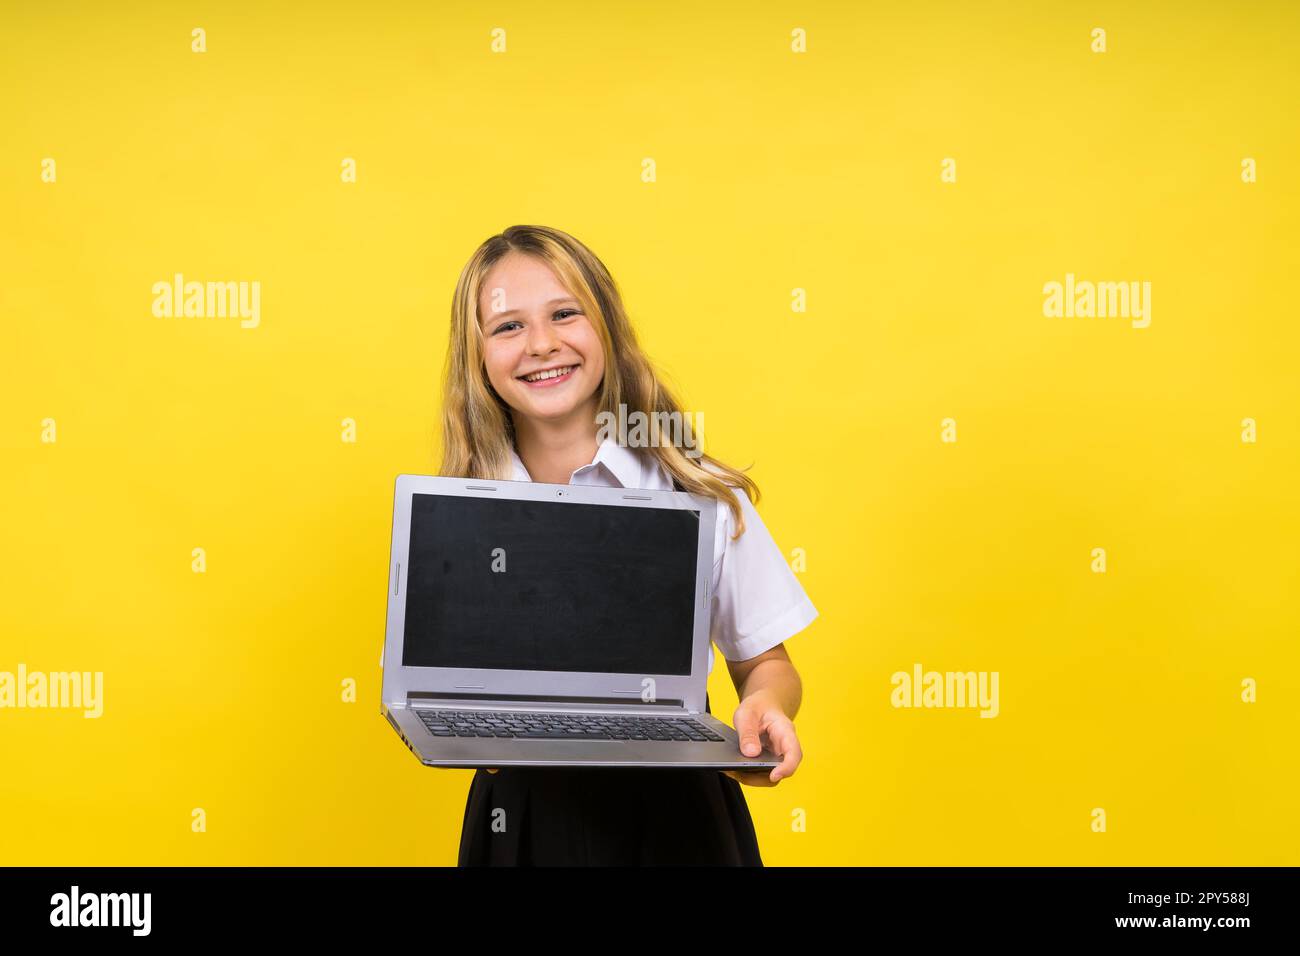 Ein kleines, glückliches, blondes Mädchen, das 12-13 Jahre alt ist, mit einem Laptop-pc. Kinderkinderkindliches Lifestyle-Konzept. Stockfoto